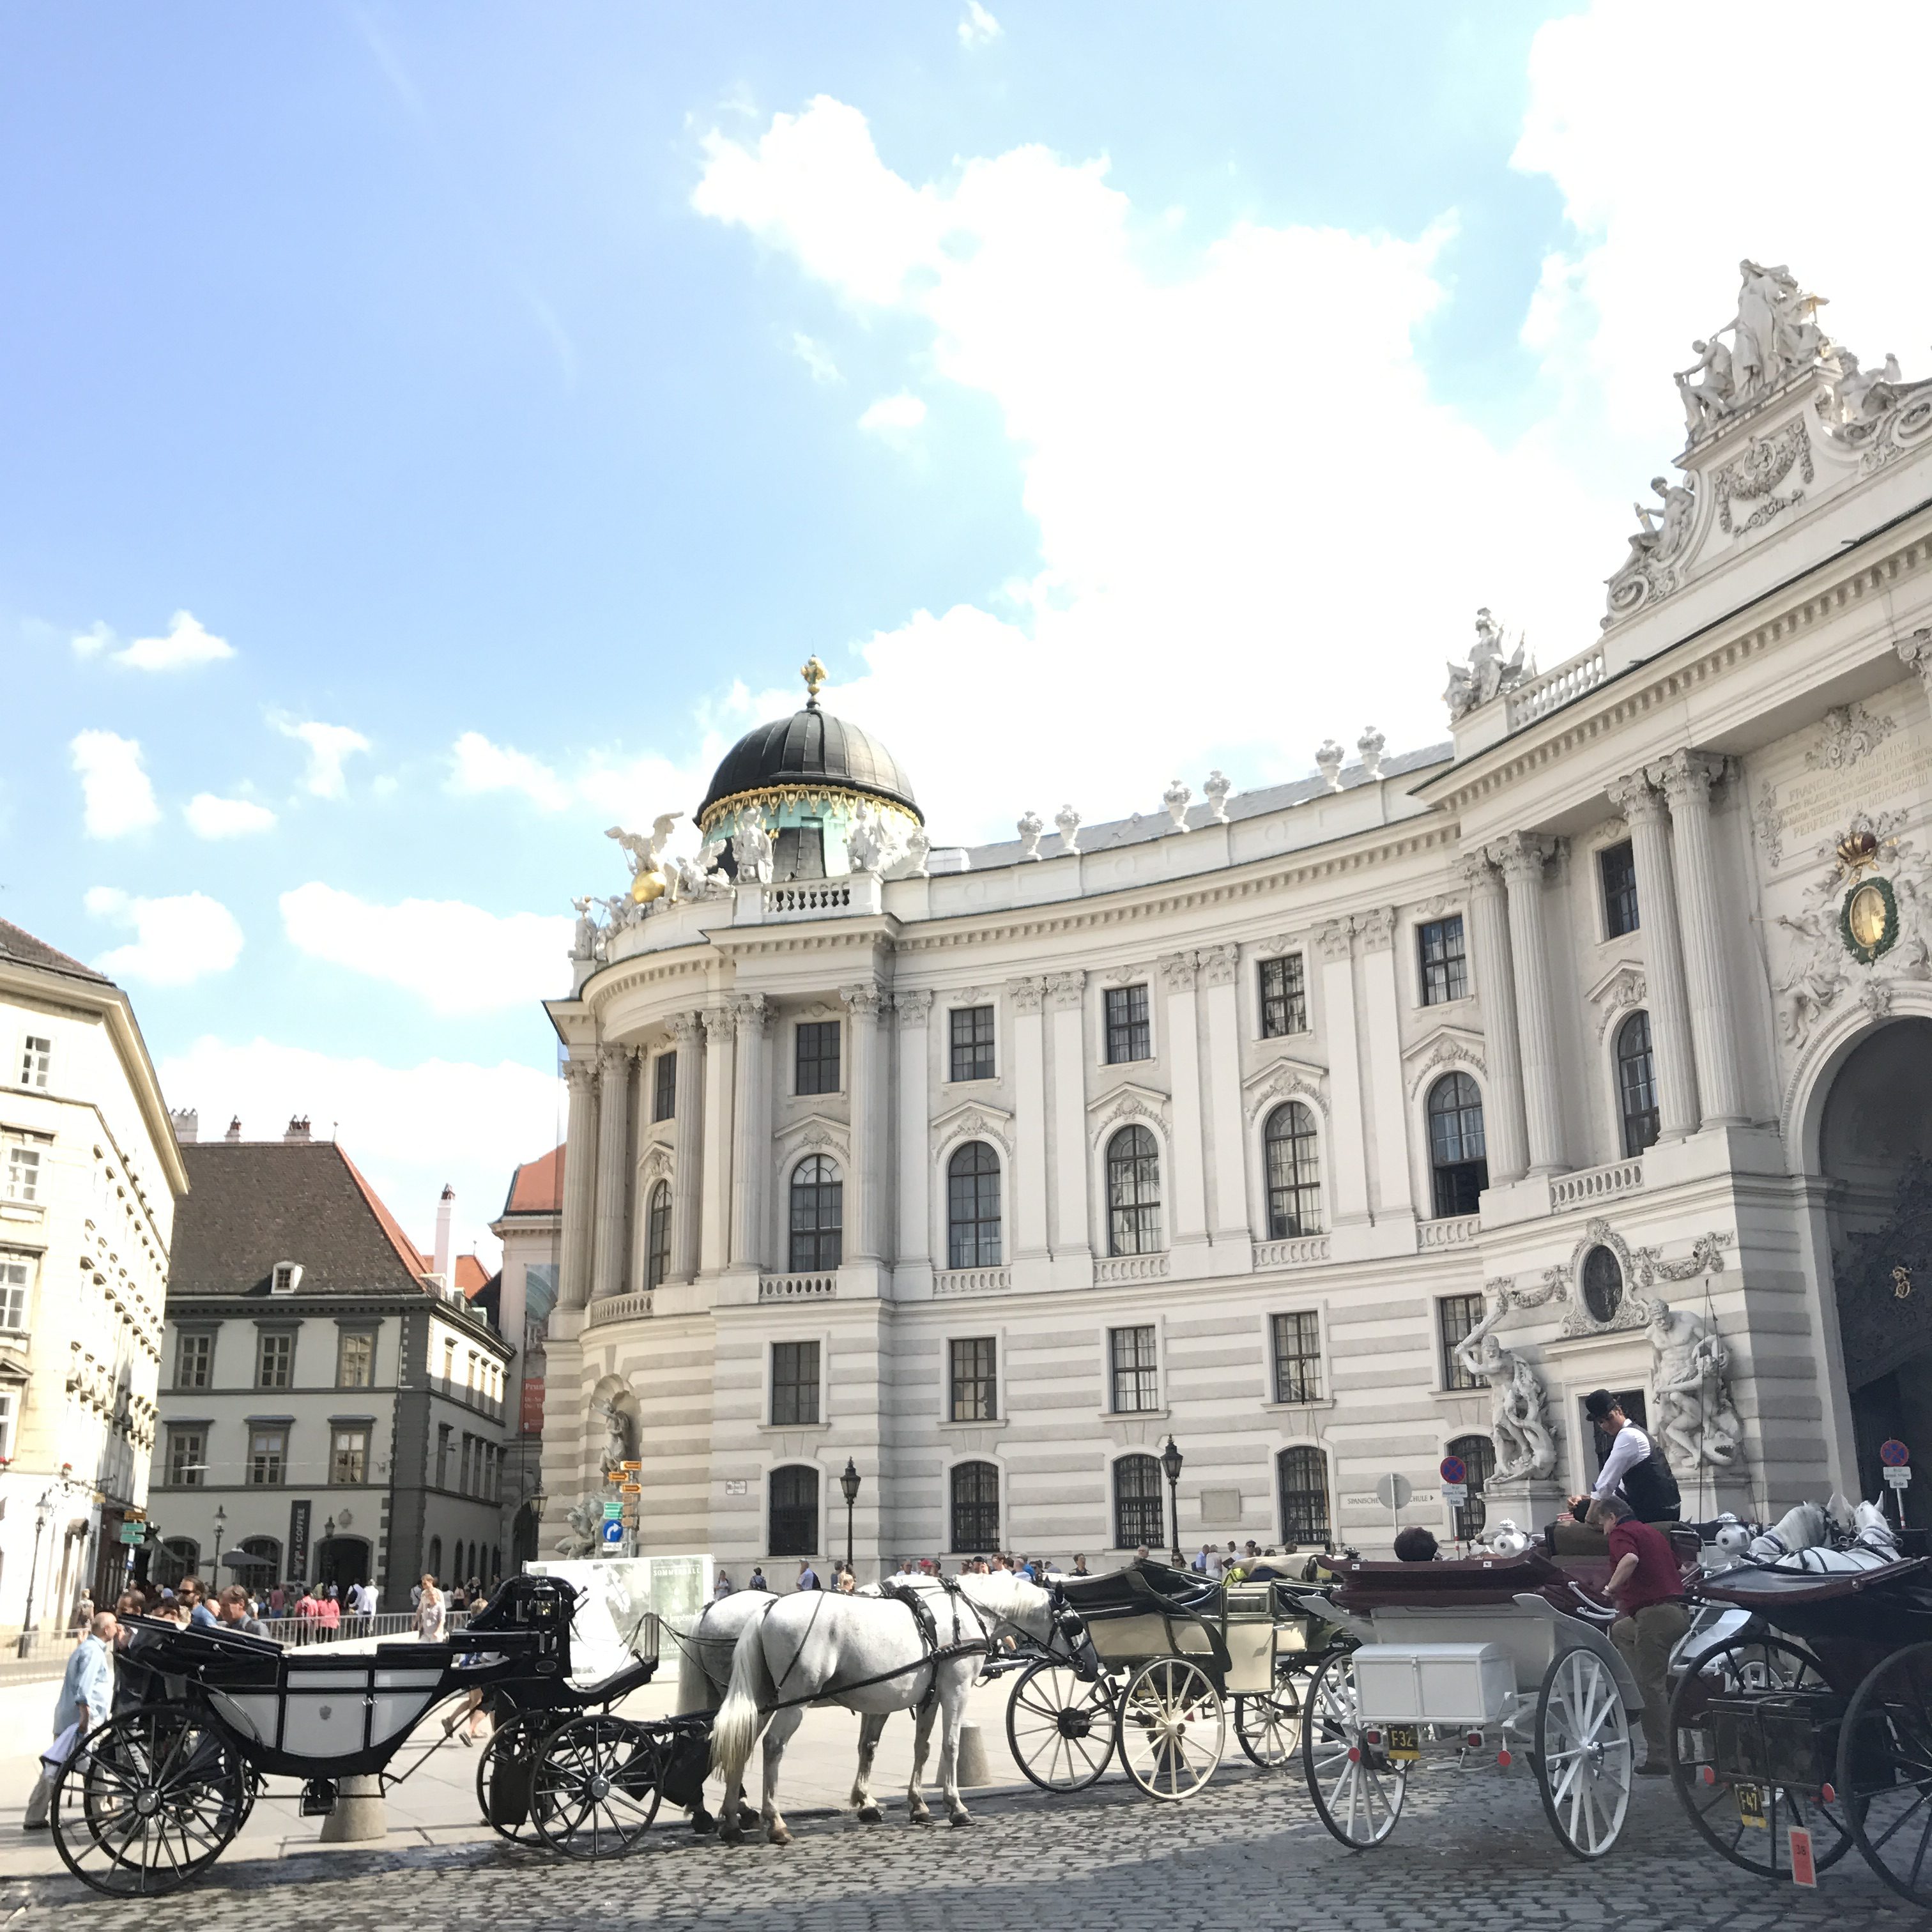 Unsere Tipps für eine Städtereise nach Wien